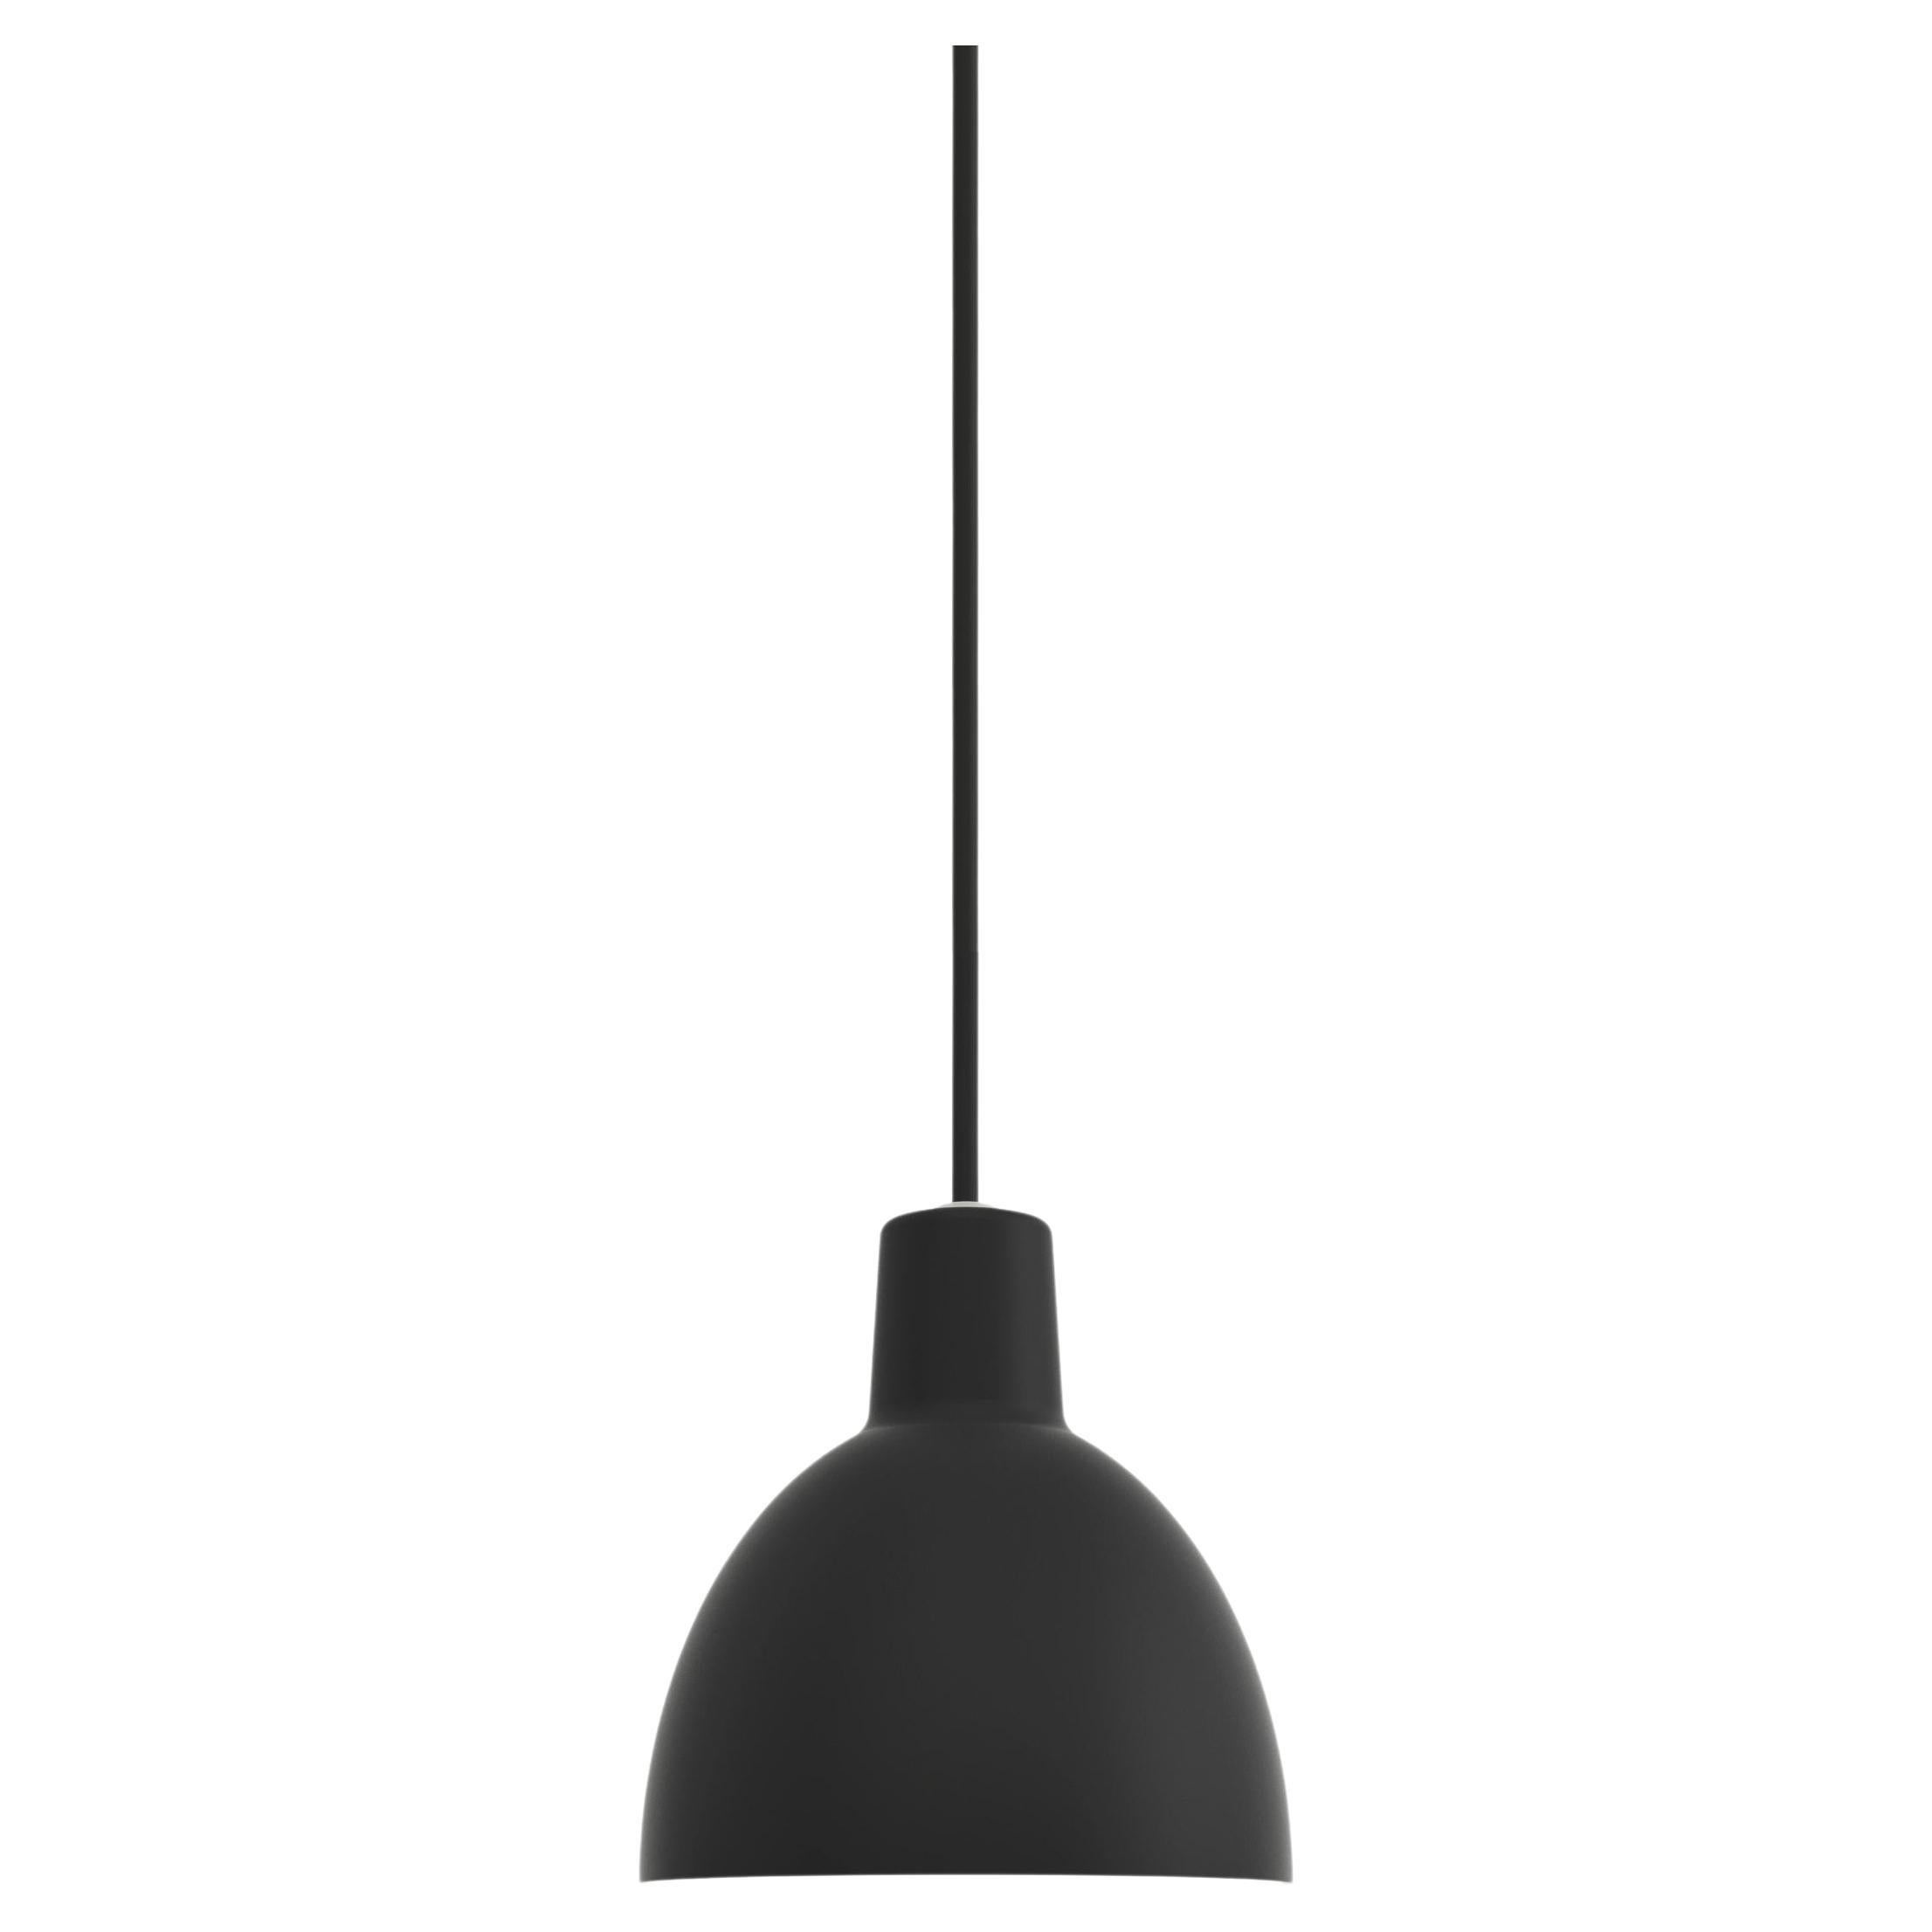 Toldbod 120 Pendant Lamp in Black by Louis Poulsen For Sale